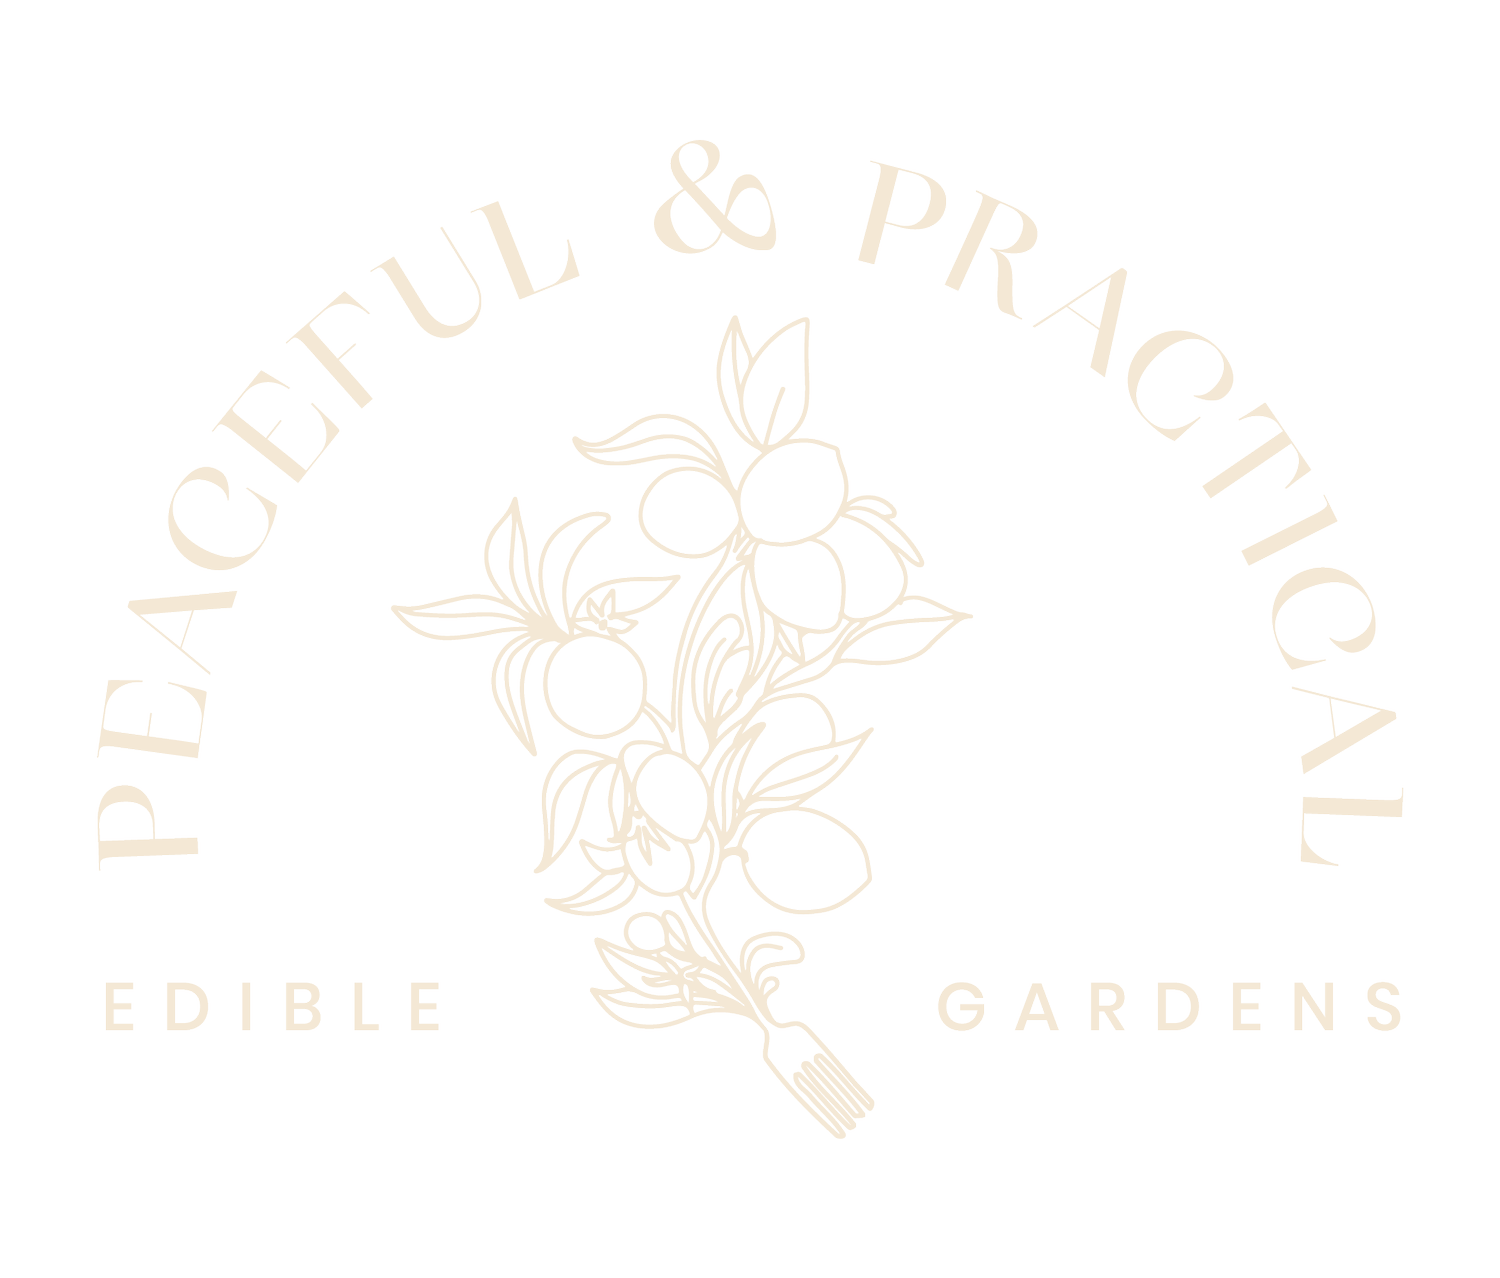 Peaceful + Practical Edible Gardens